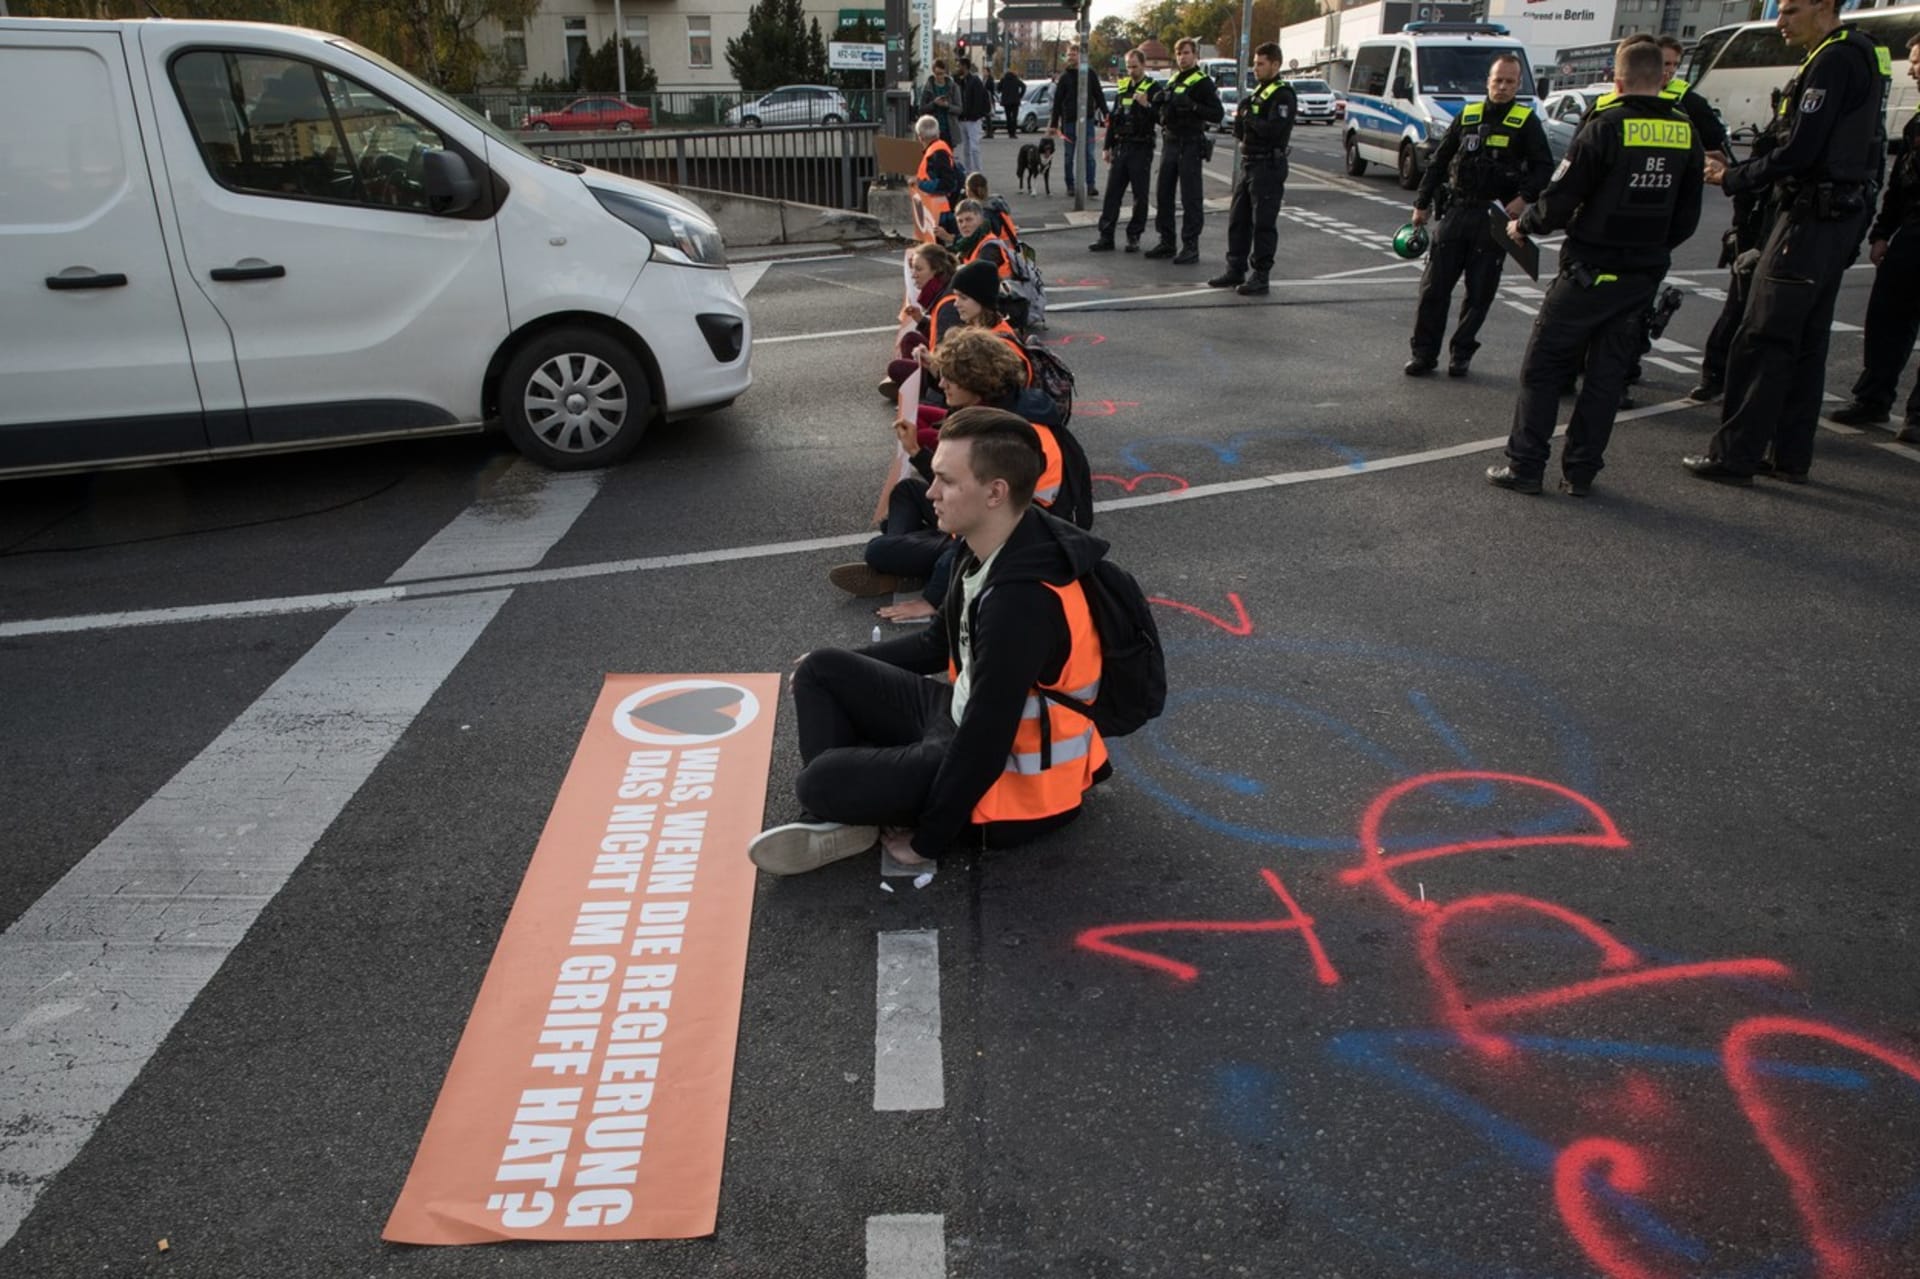 Klimatičtí aktivisté z hnutí Letzte Generation blokují dopravu v centru Berlína